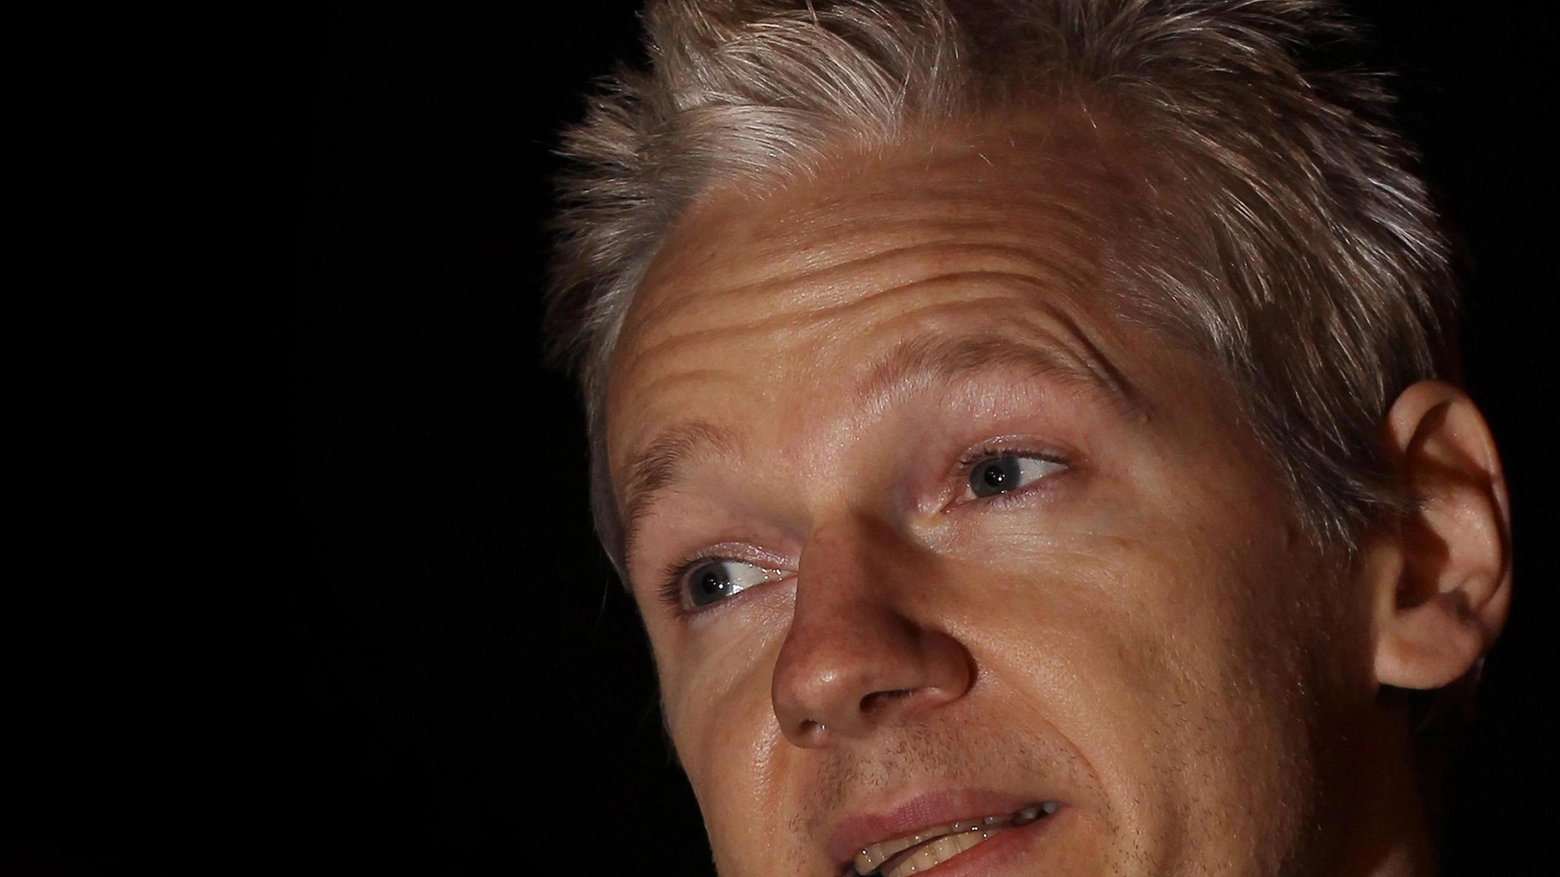 Capire il fenomeno WikiLeaks  Gli studenti del “Mamiani“  a confronto sul caso Assange